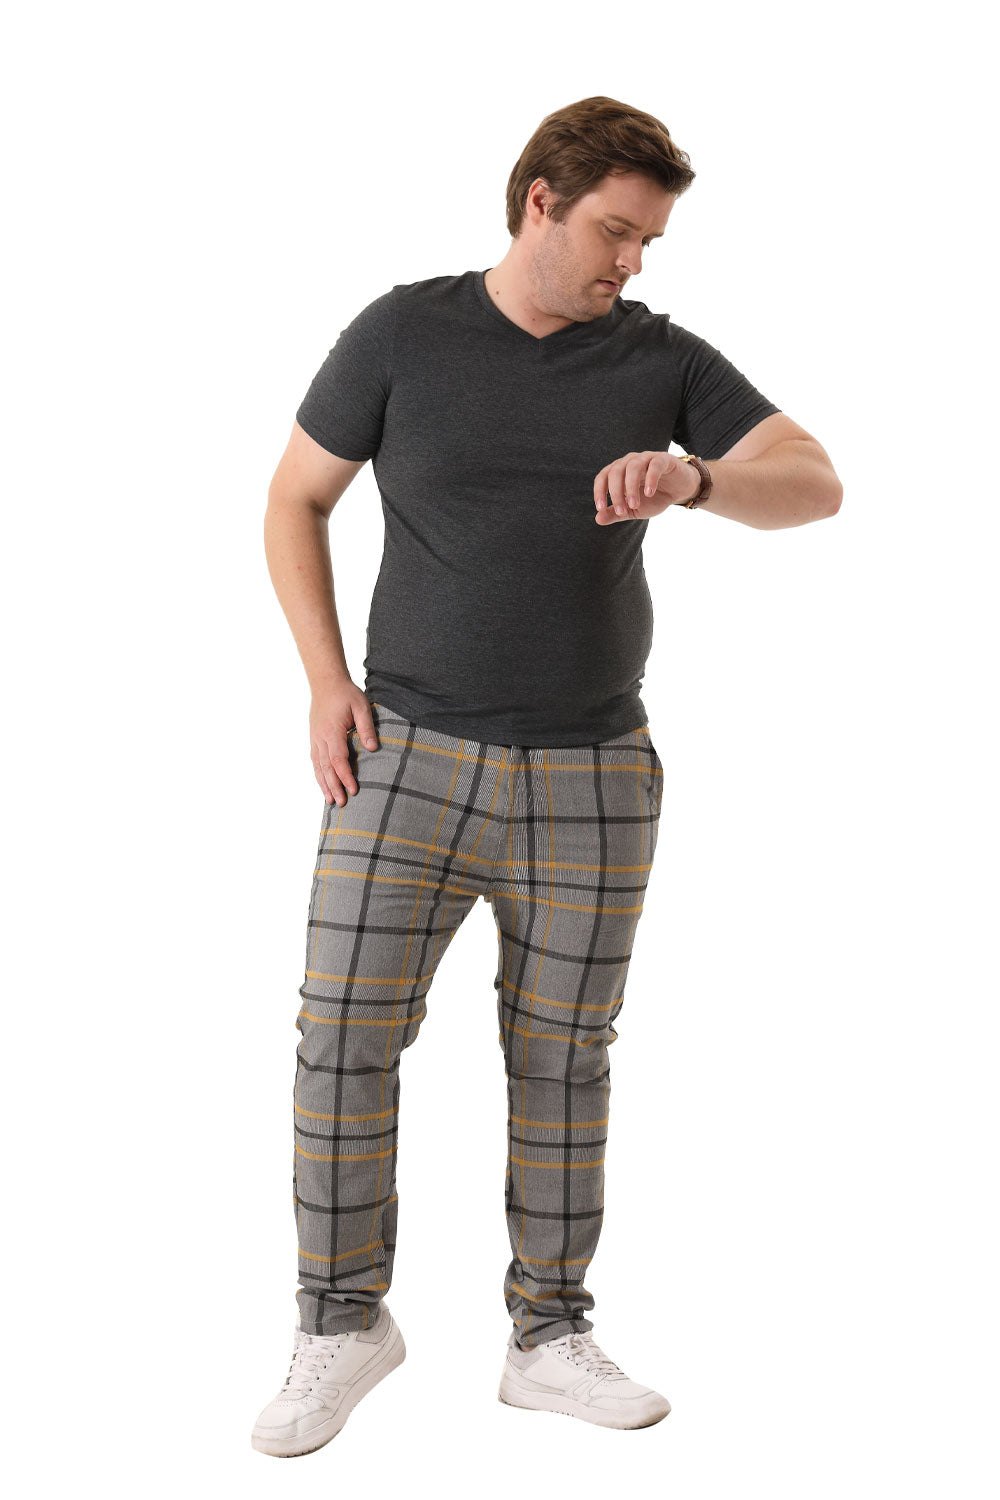 Men's gray striped pants(B&T)